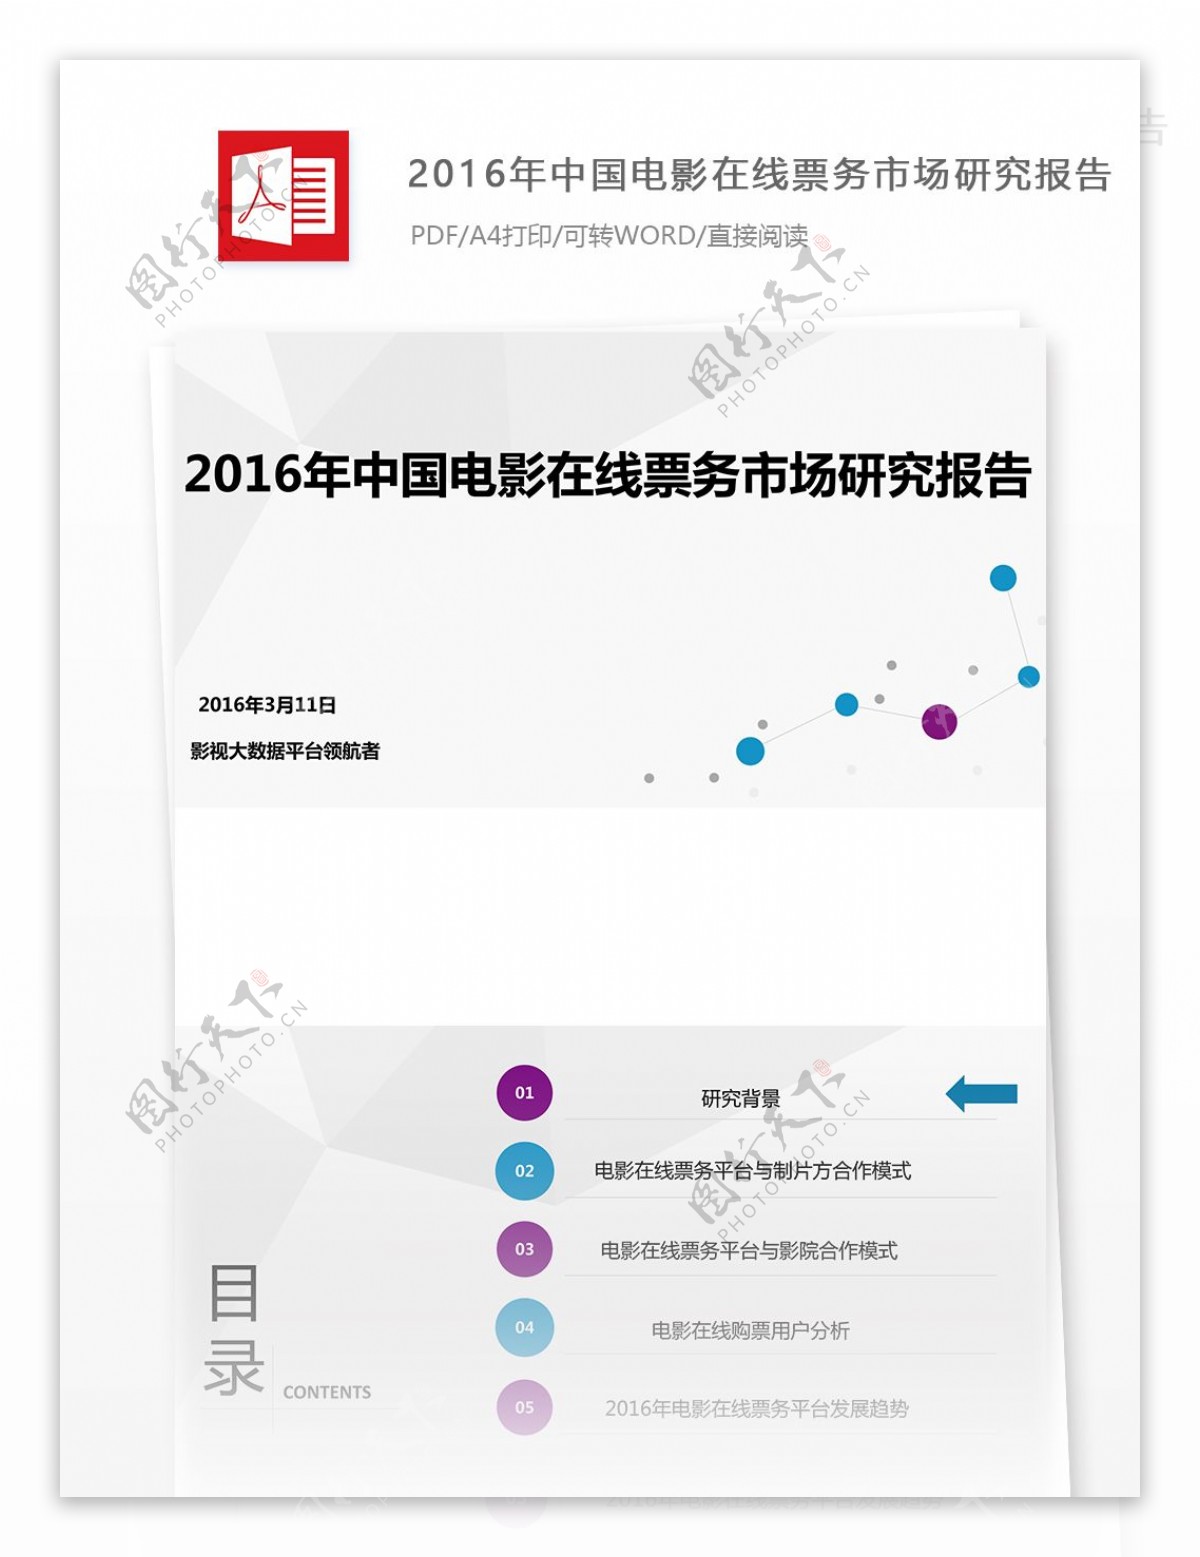 2016年中国电影在线票务市场研究报告